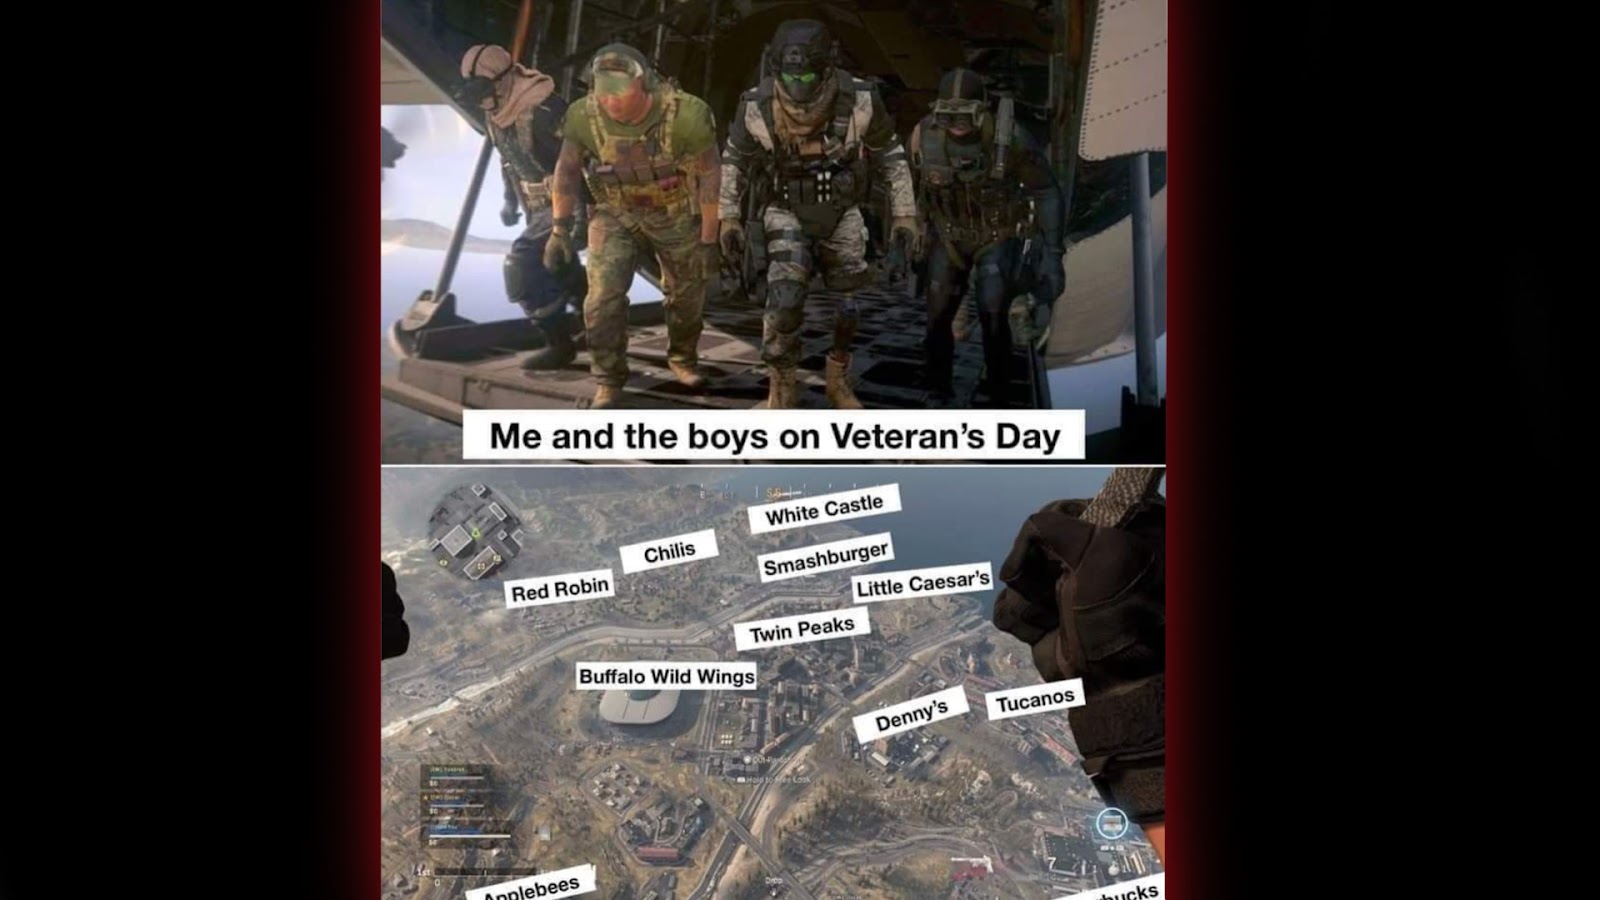 veterans day meme